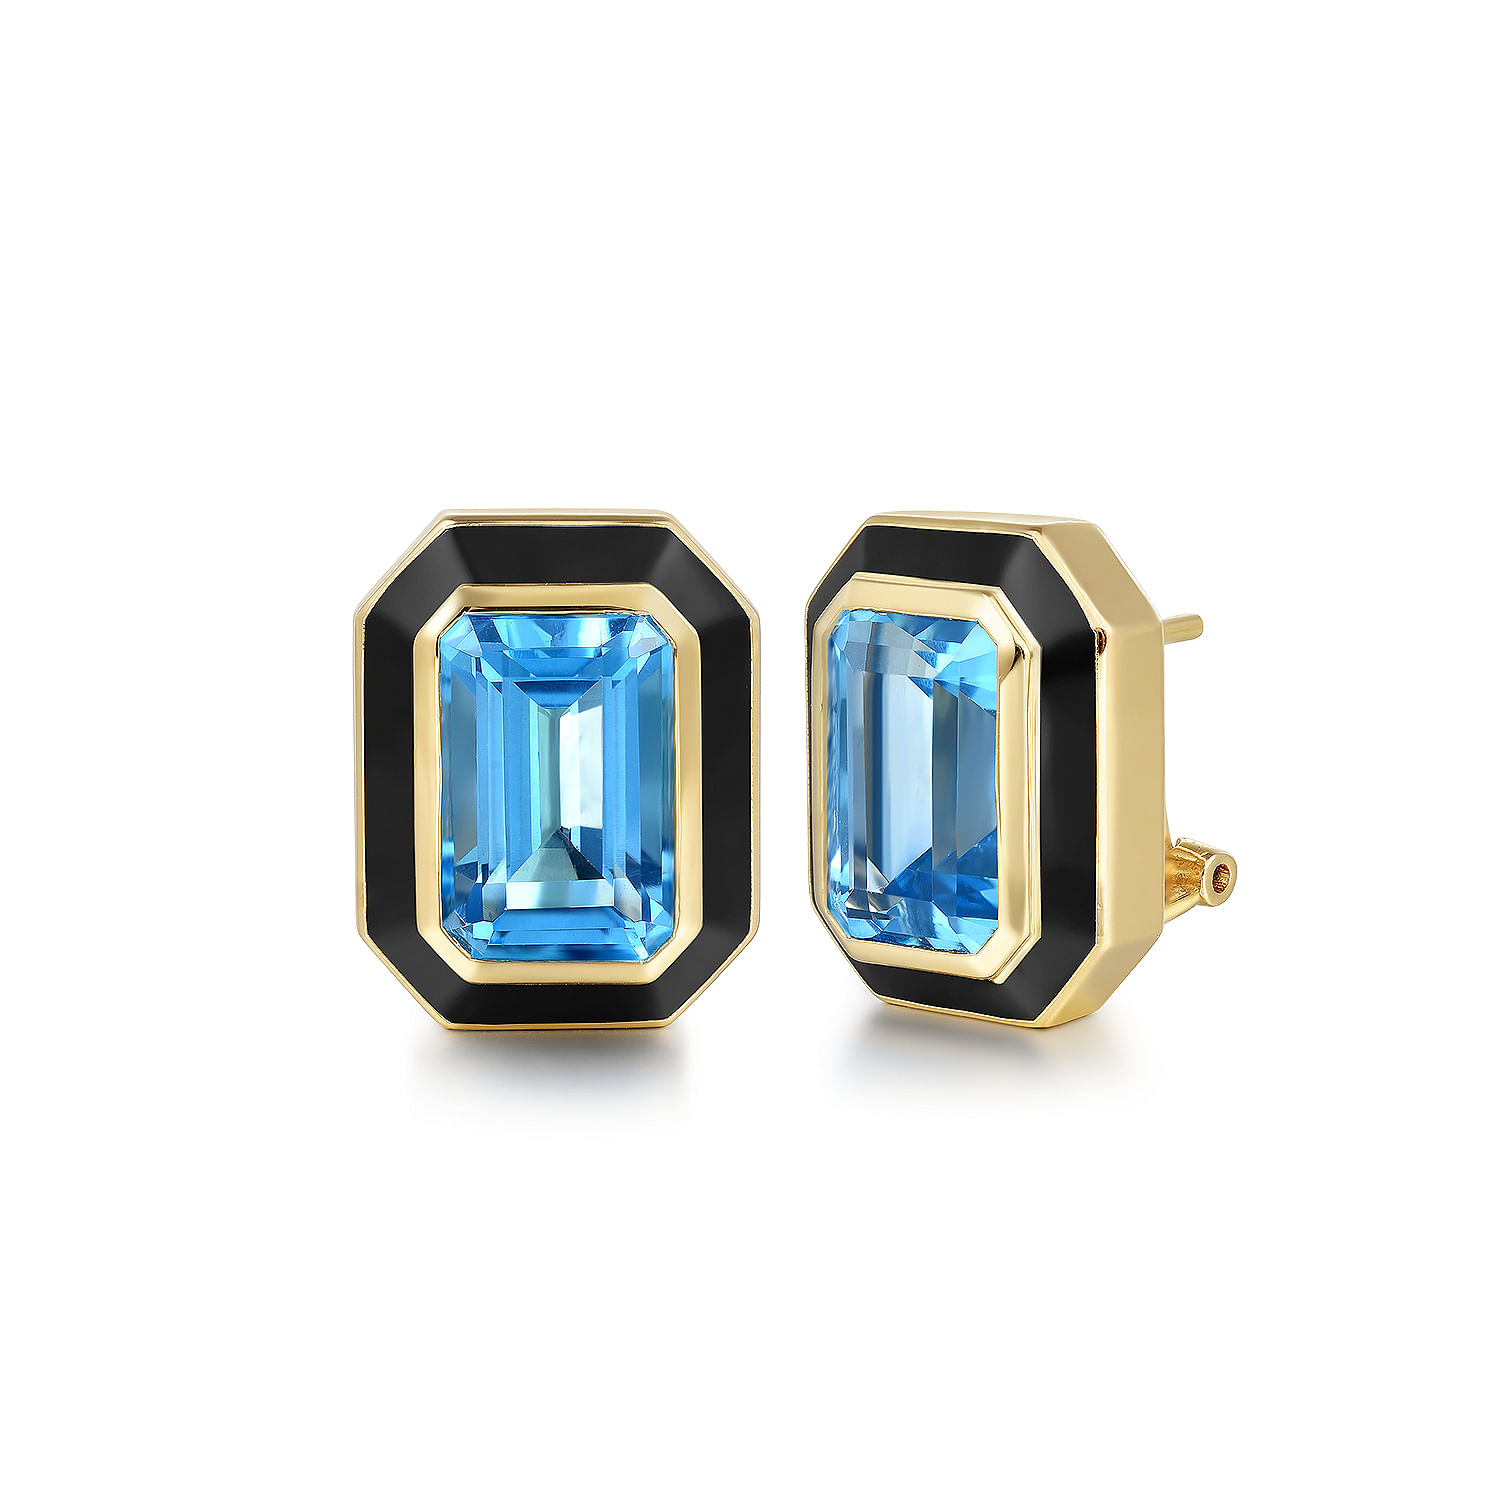 14K Yellow Gold Blue Topaz Emerald Cut Earrings With Flower Pattern J-Back and Black Enamel